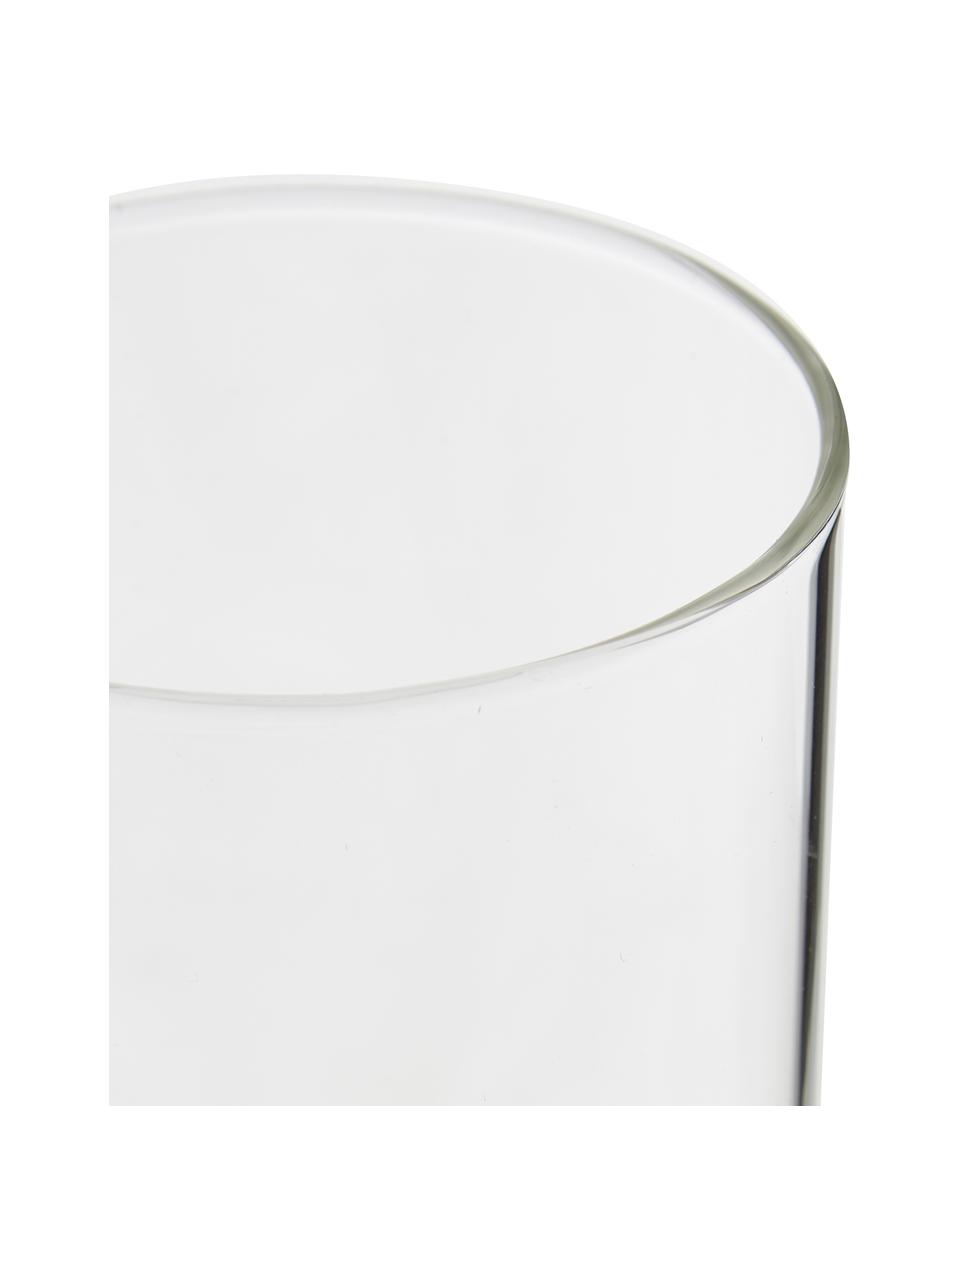 Bicchiere acqua in vetro borosilicato Boro 6 pz, Vetro borosilicato, Trasparente, Ø 8 x Alt. 9 cm, 250 ml